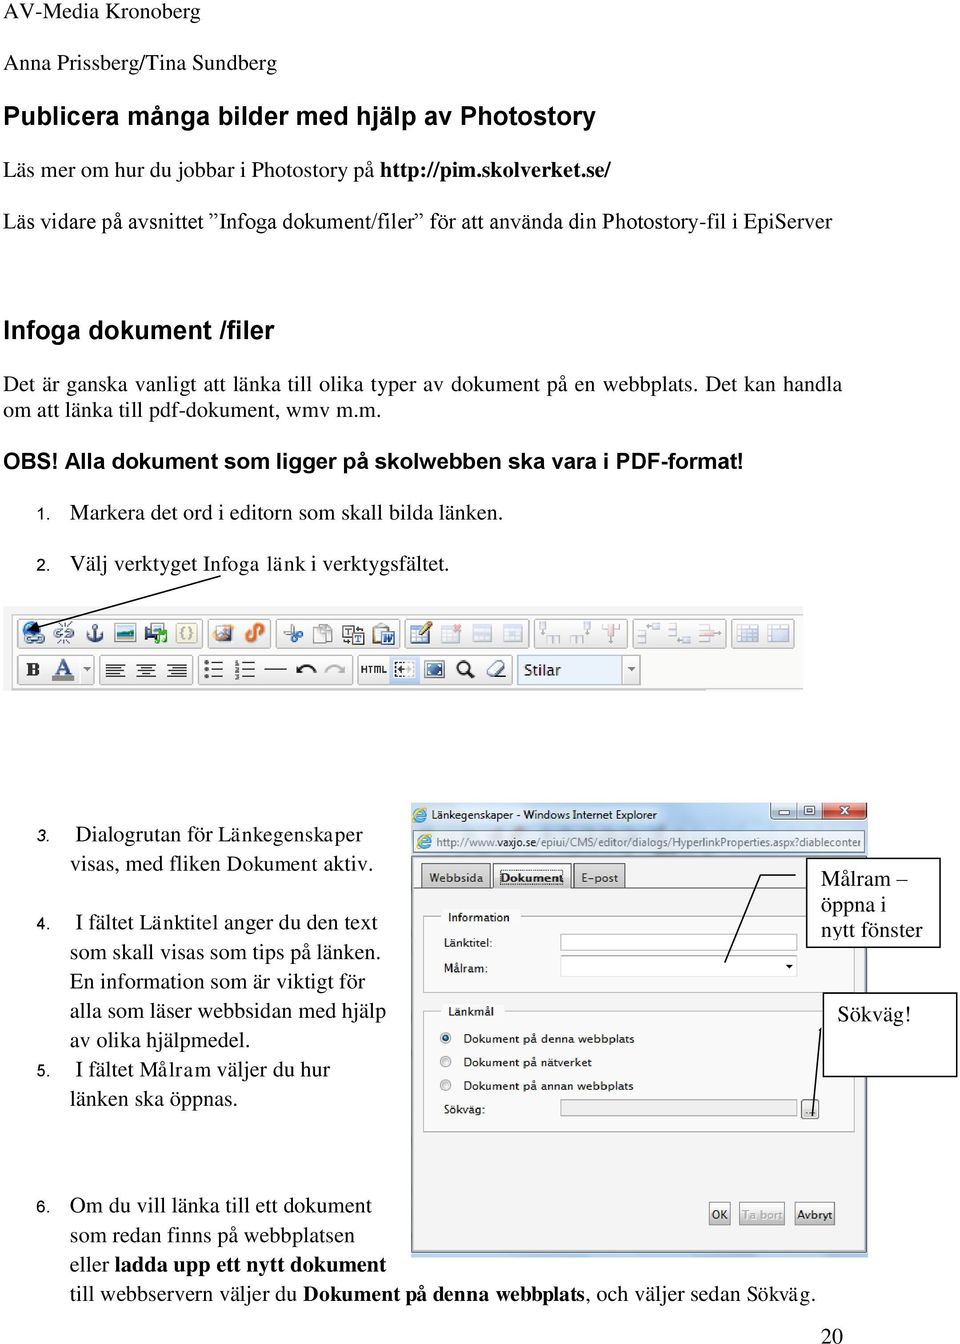 Det kan handla om att länka till pdf-dokument, wmv m.m. OBS! Alla dokument som ligger på skolwebben ska vara i PDF-format! 1. Markera det ord i editorn som skall bilda länken. 2.